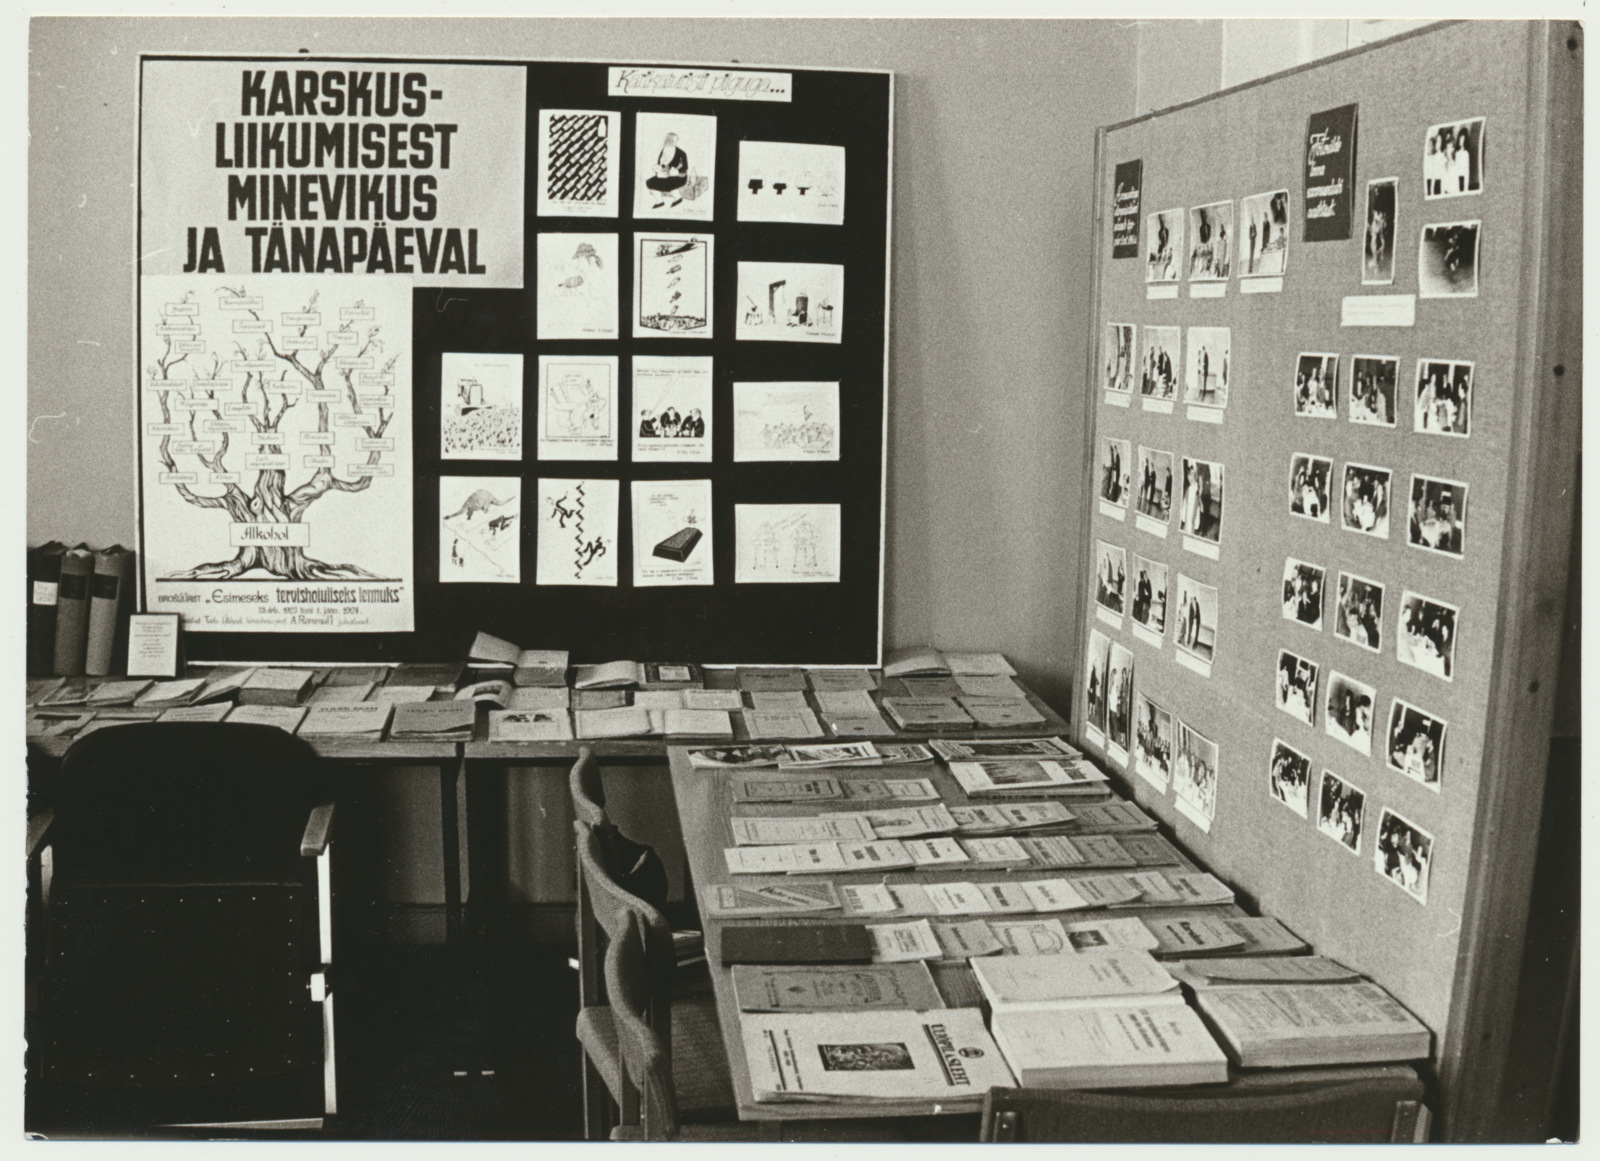 foto, ENSV Vabariikliku Karskusühingu Viljandi rajooni organisatsiooni konverents, näitus, 1988